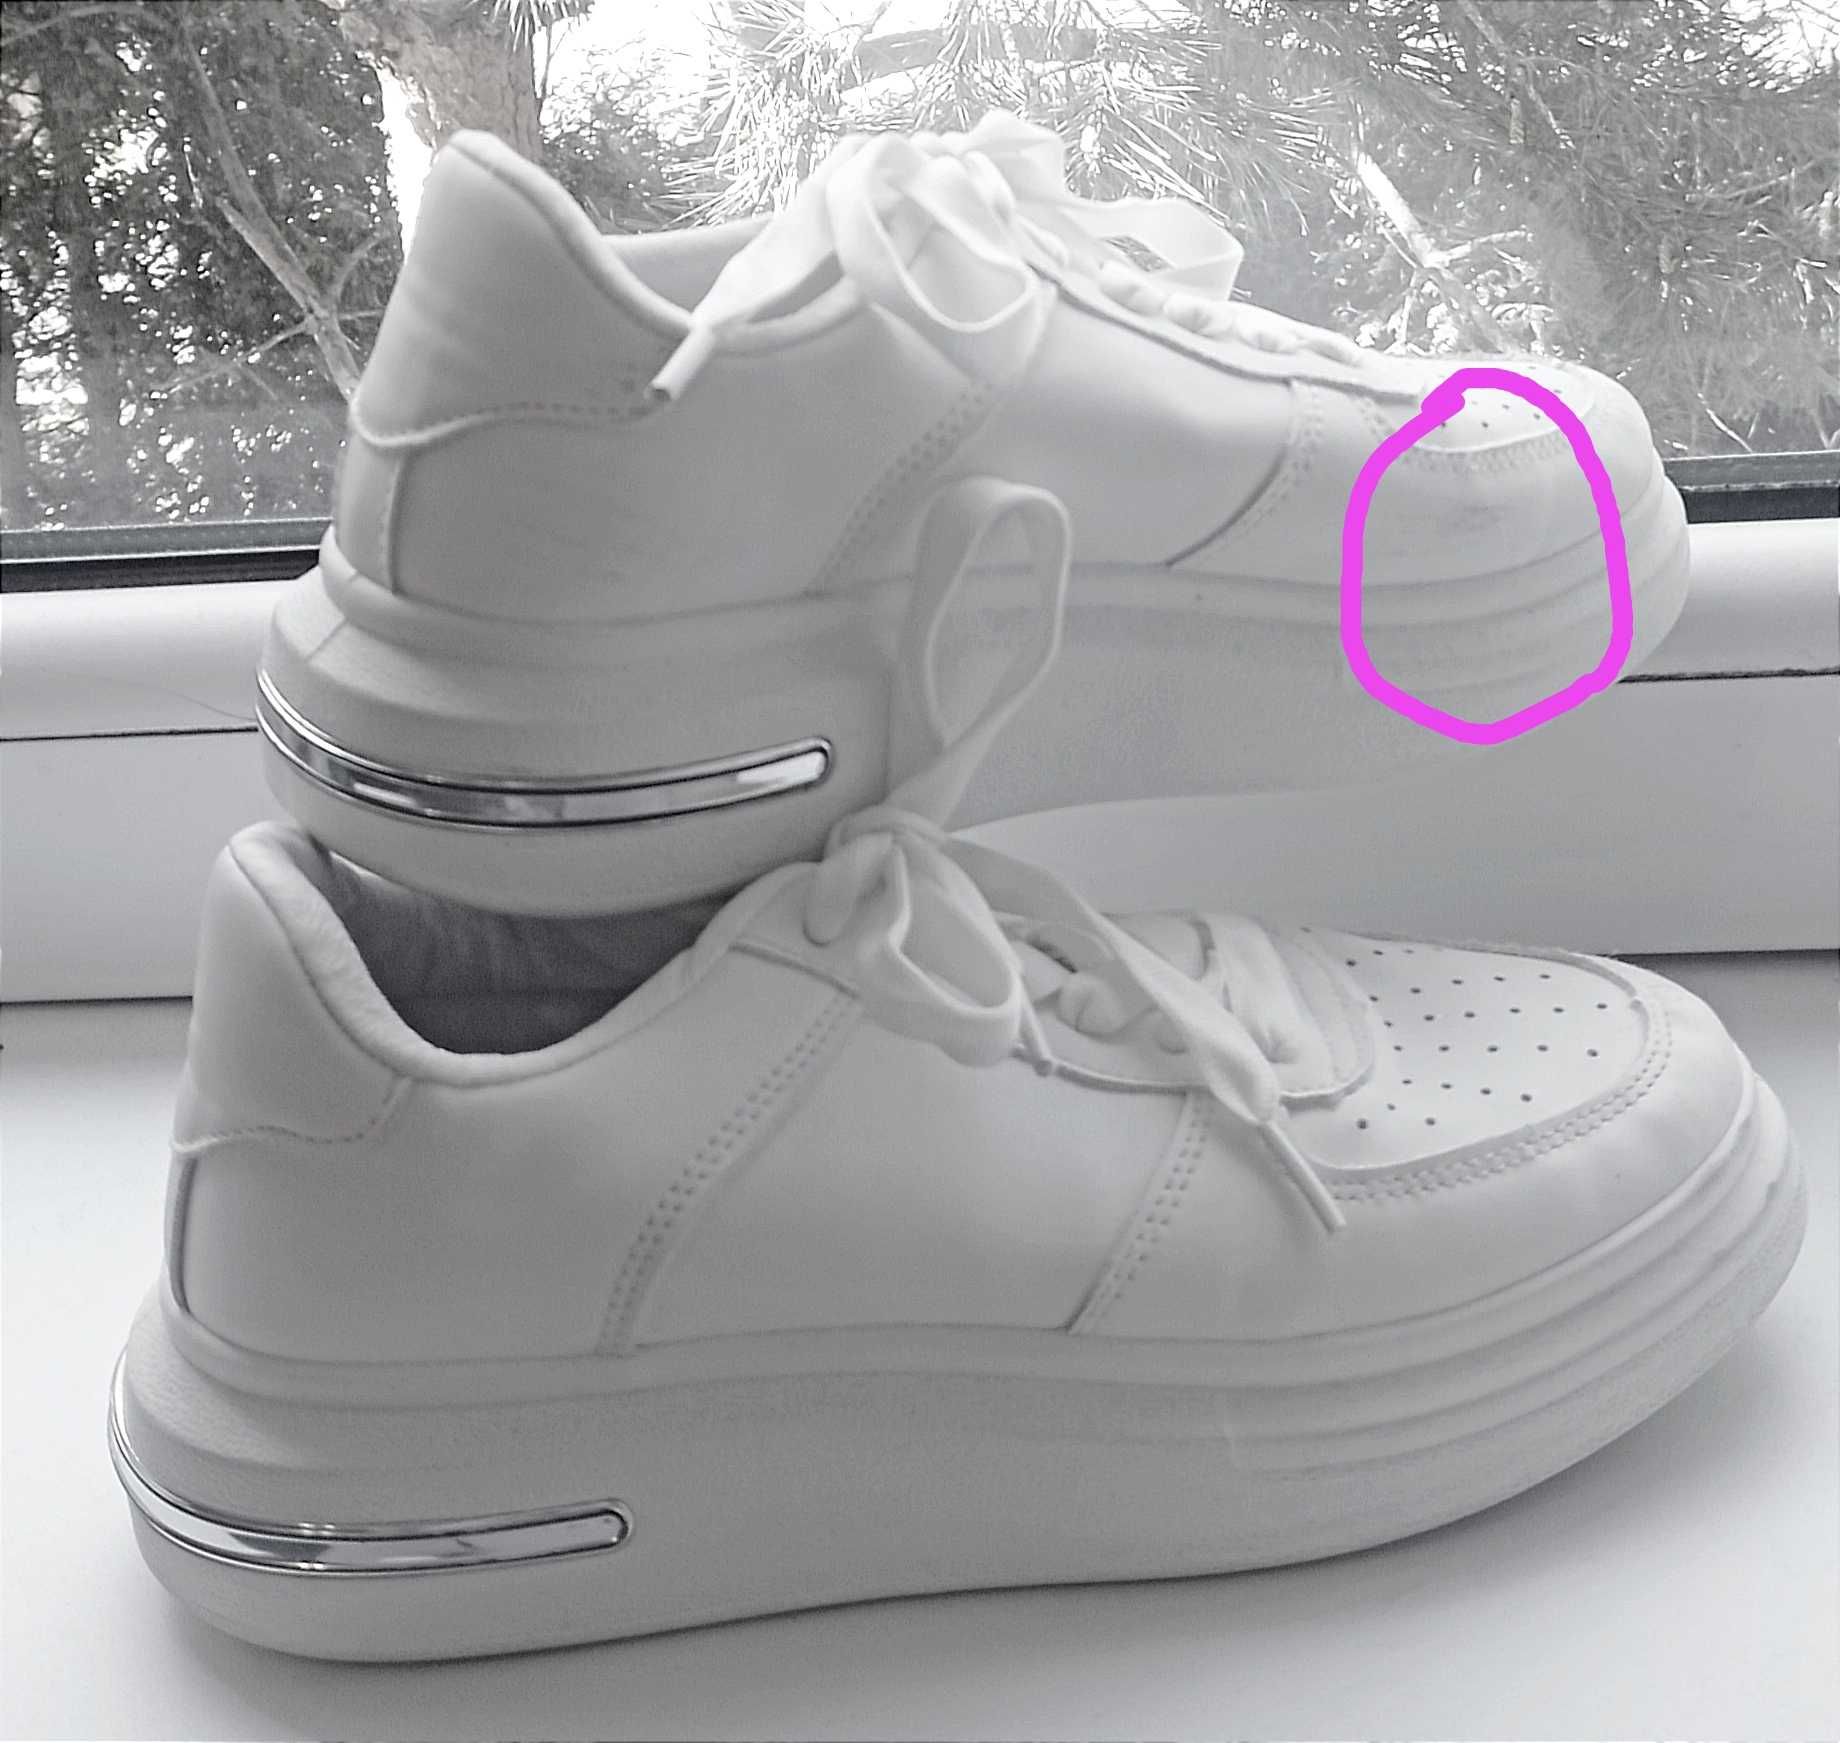 Biały sneakersy (buty sportowe)